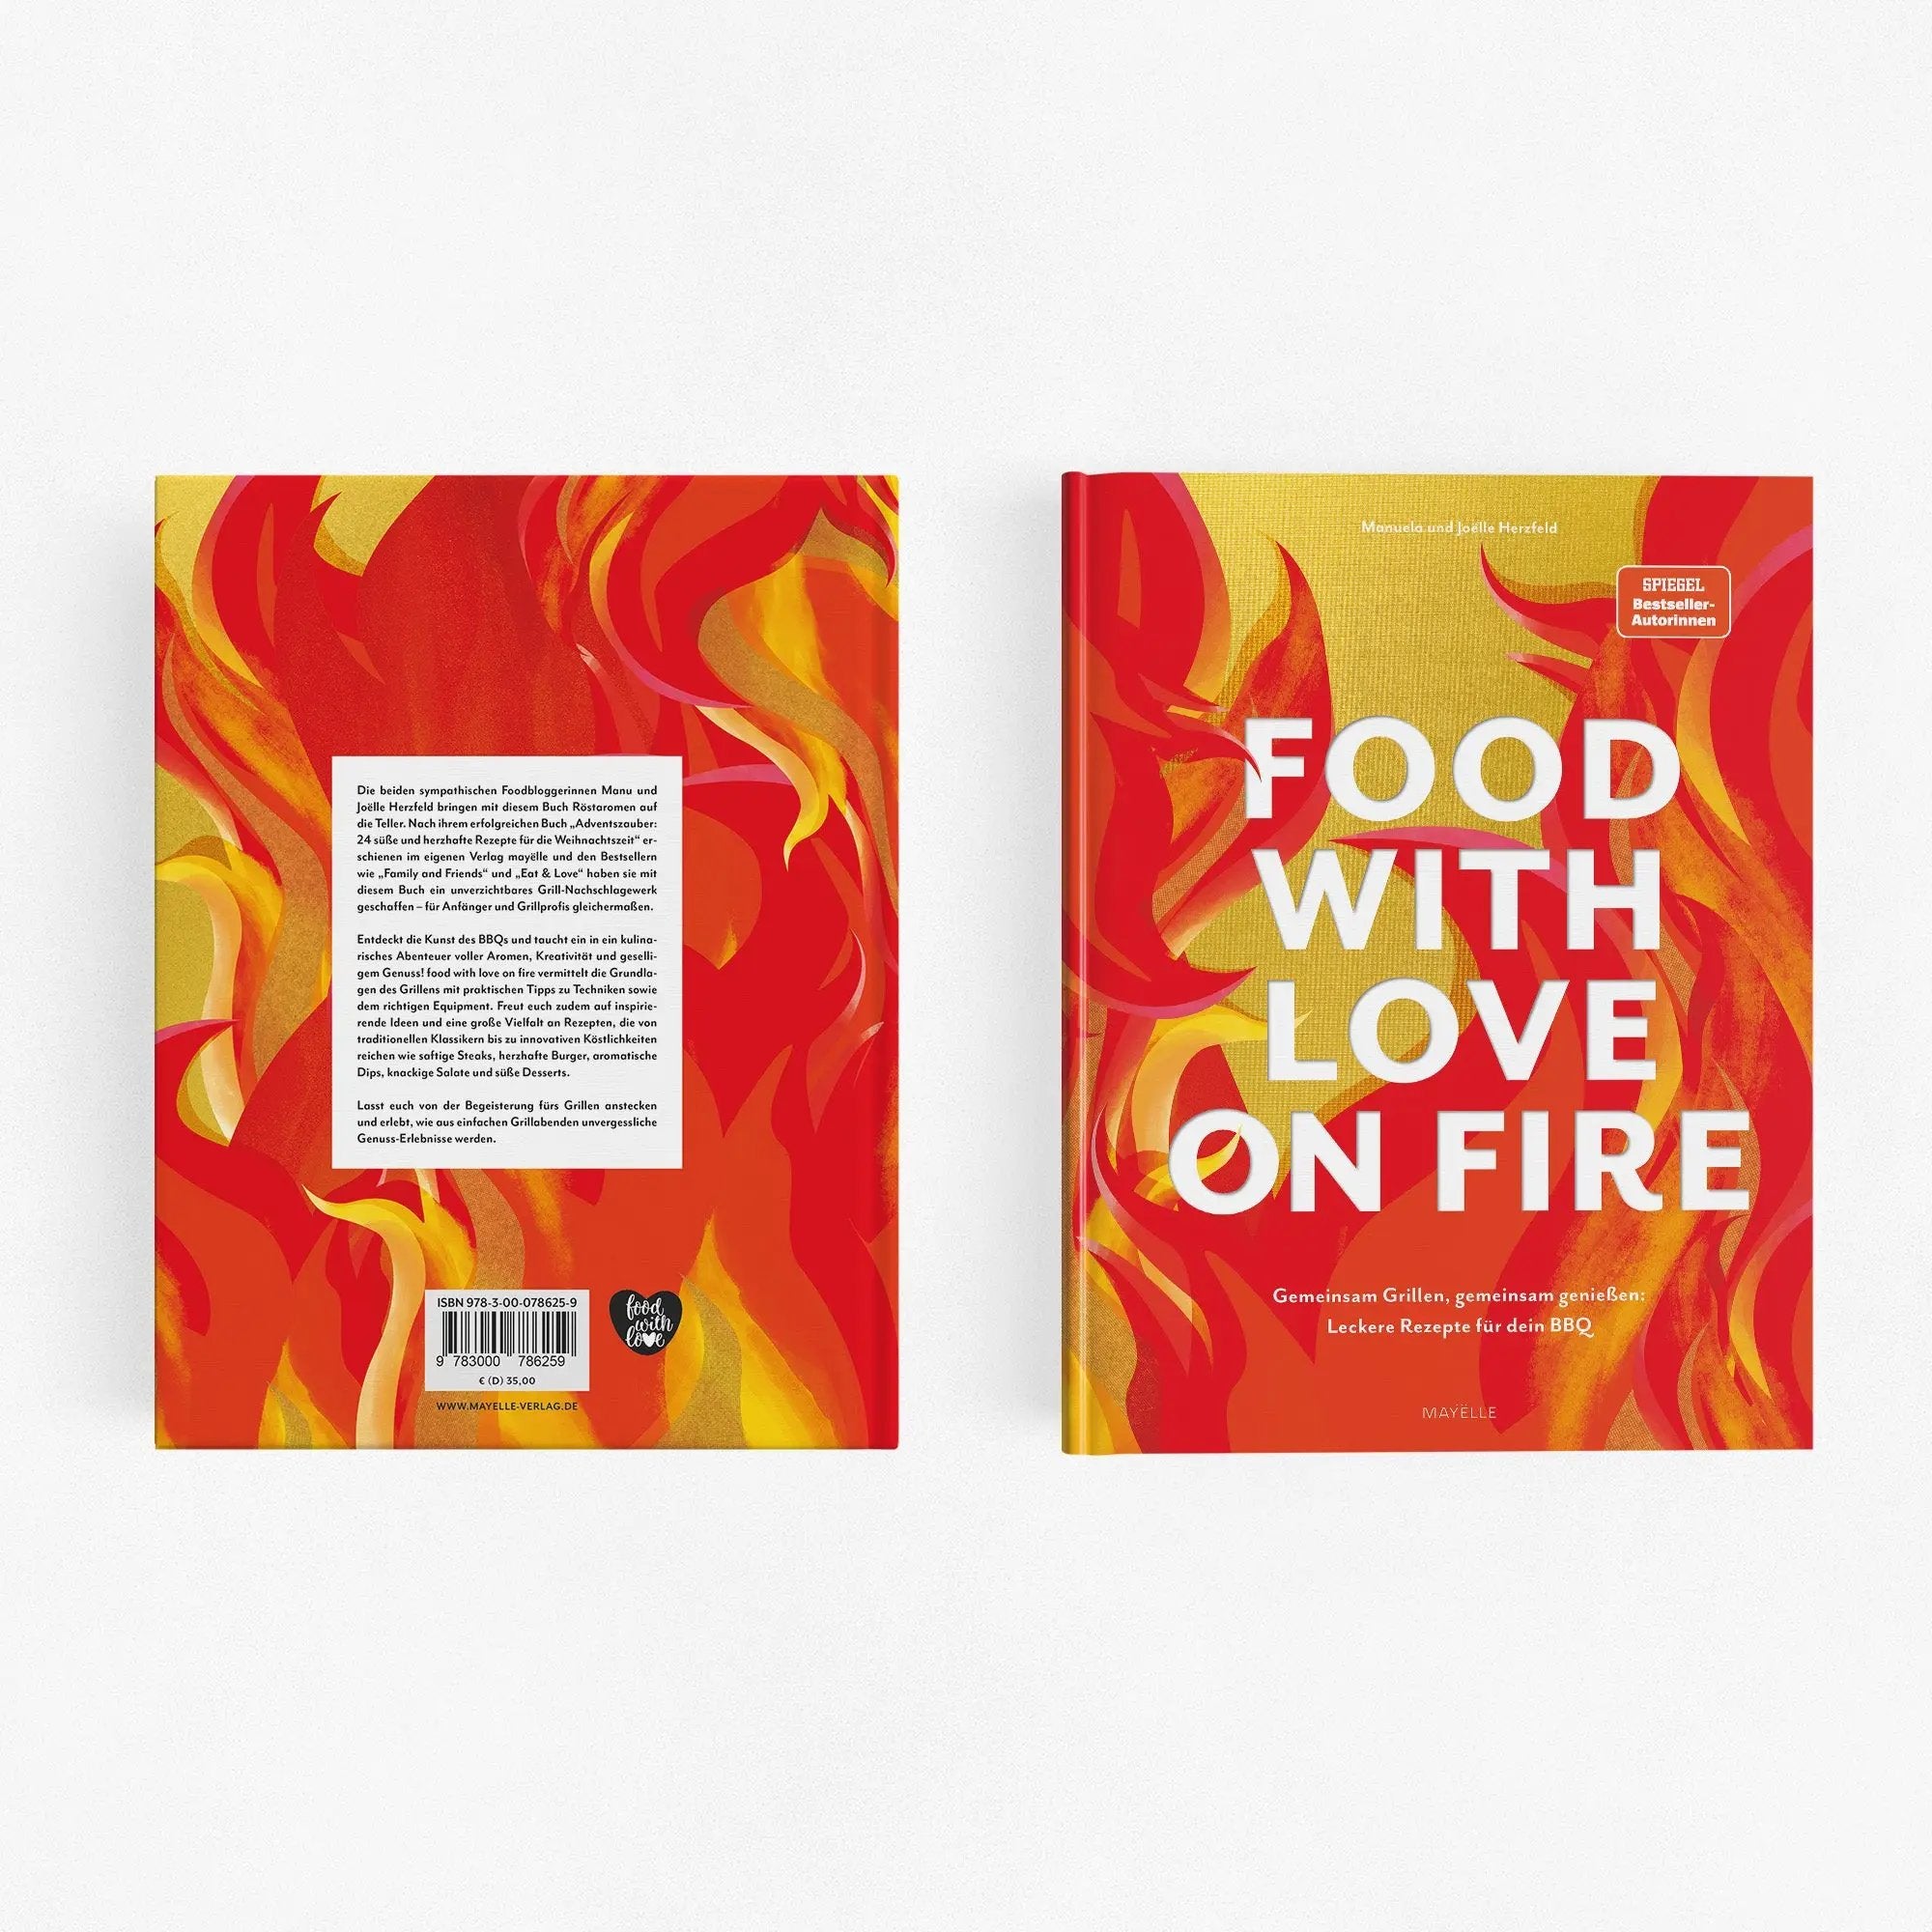 food with love on fire: Gemeinsam grillen, gemeinsam genießen